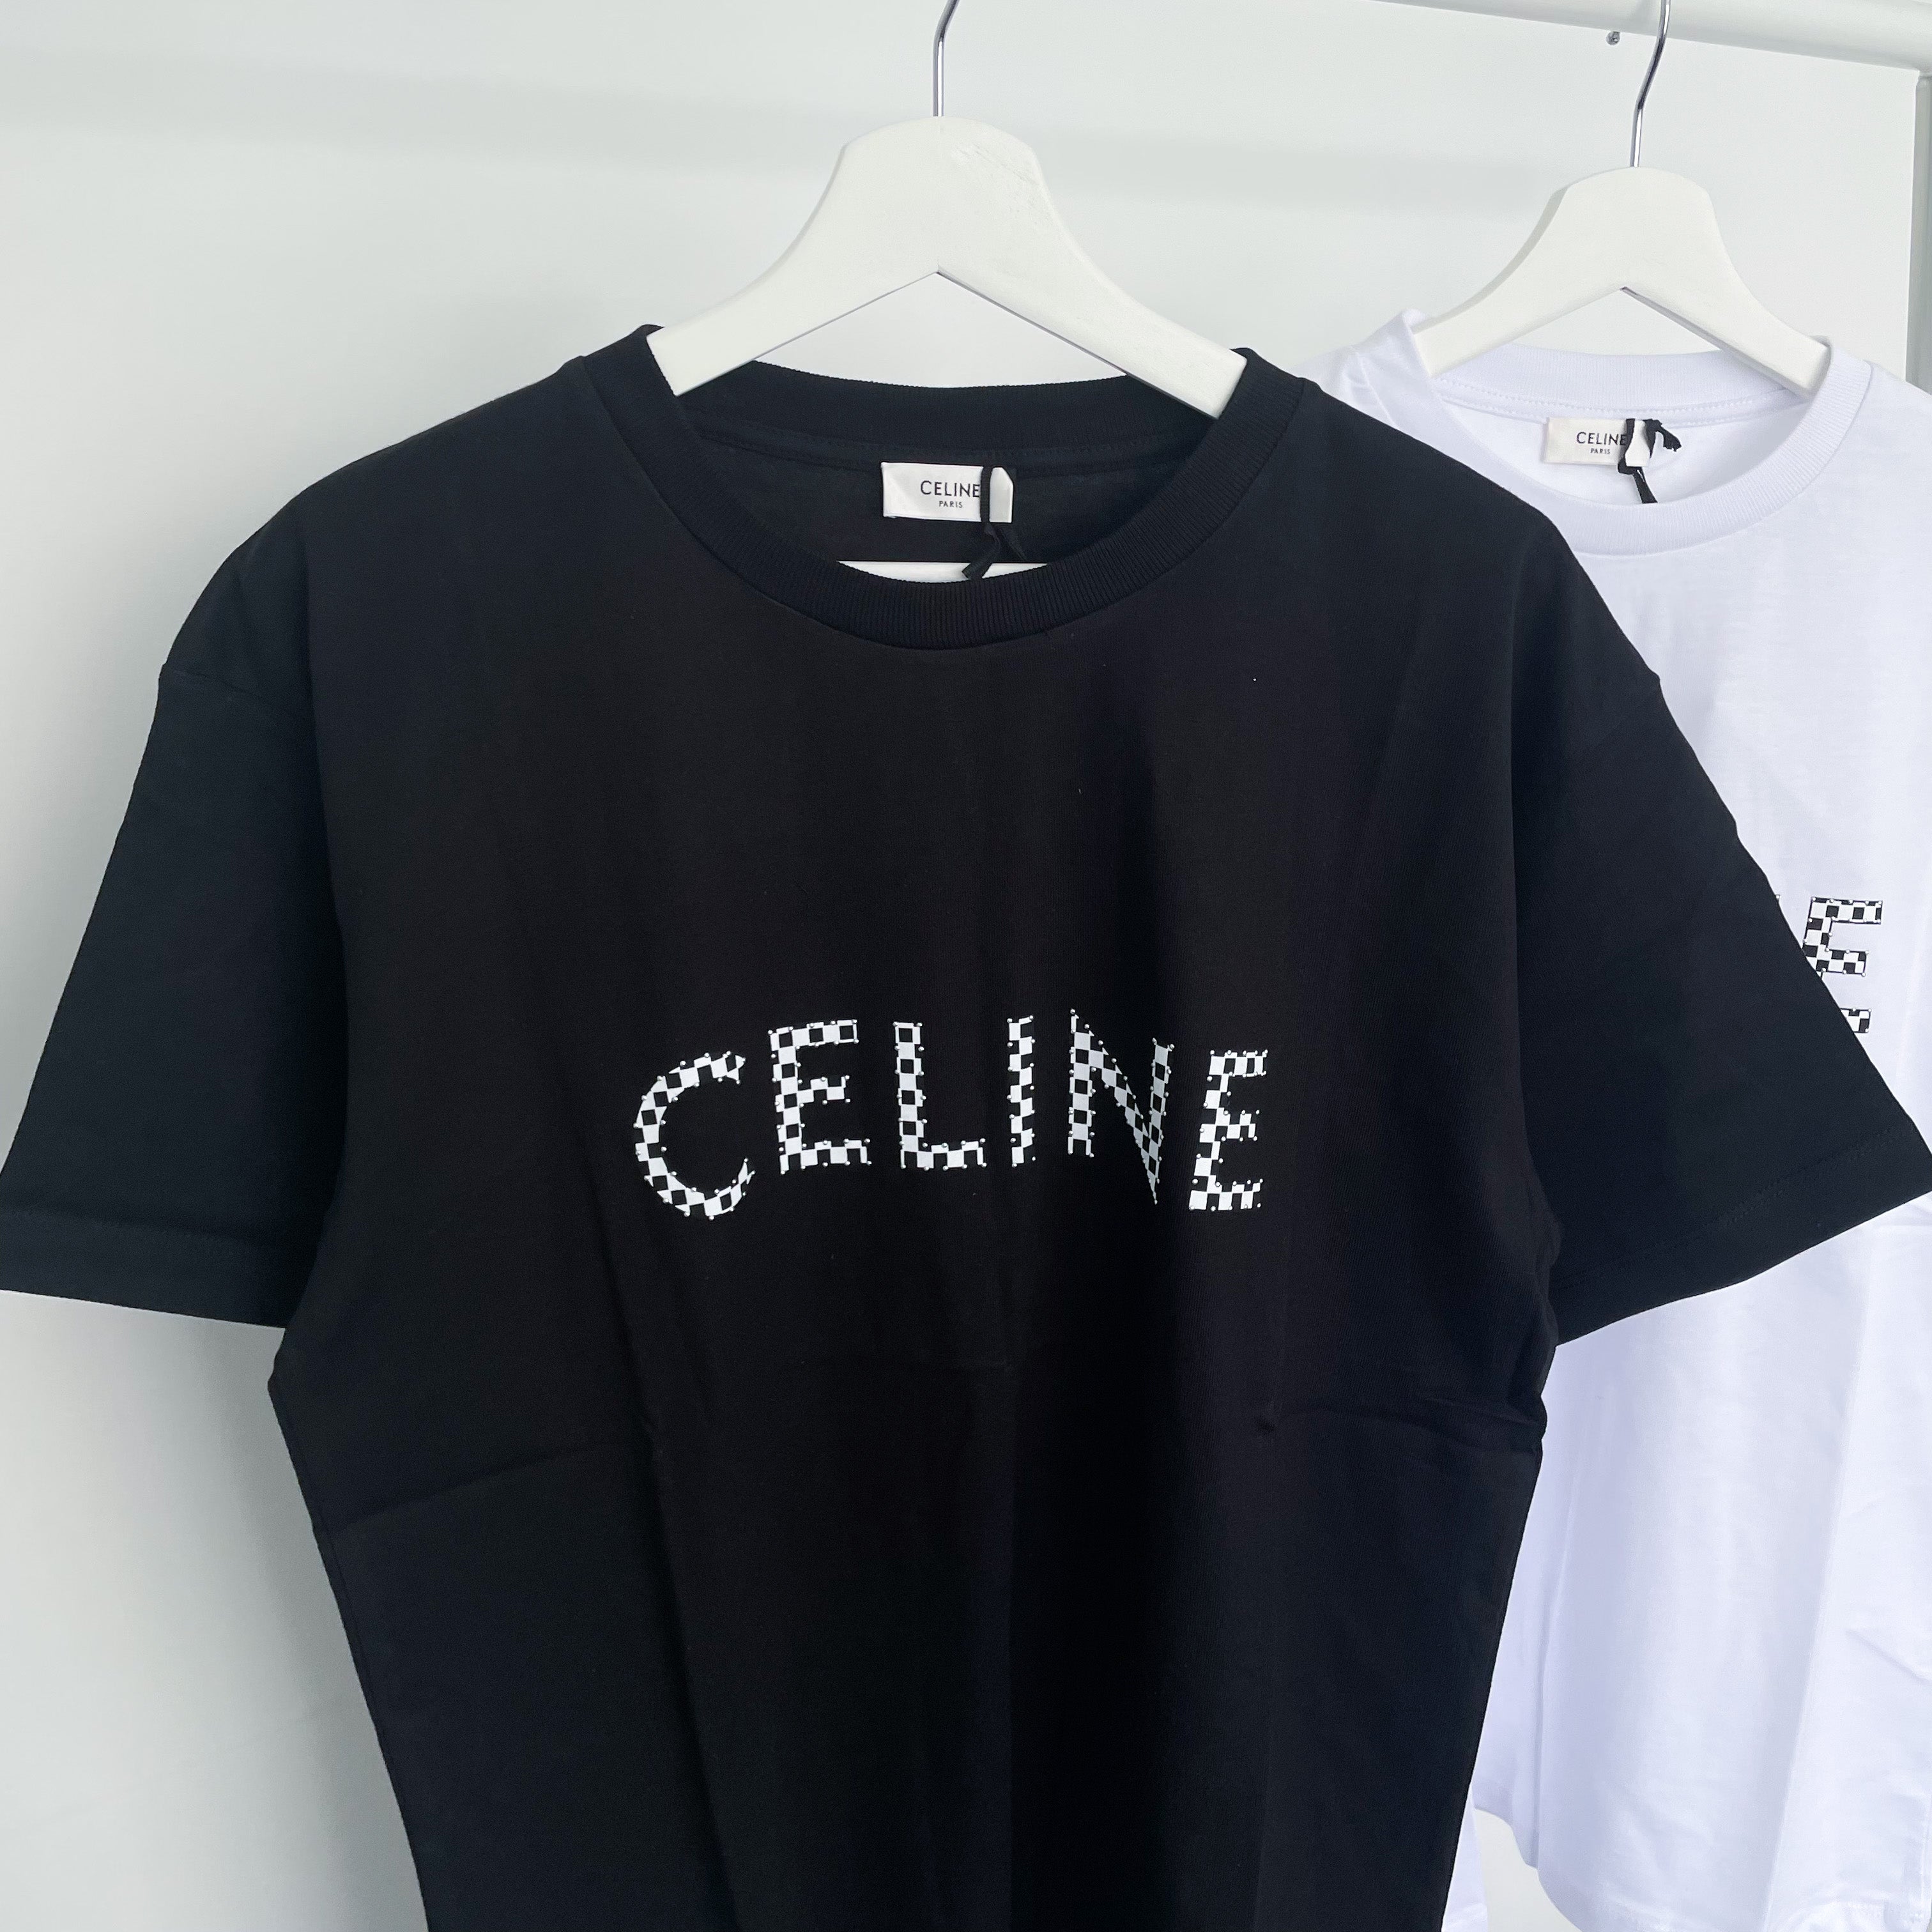 Celine Studded Logo Tee - Black